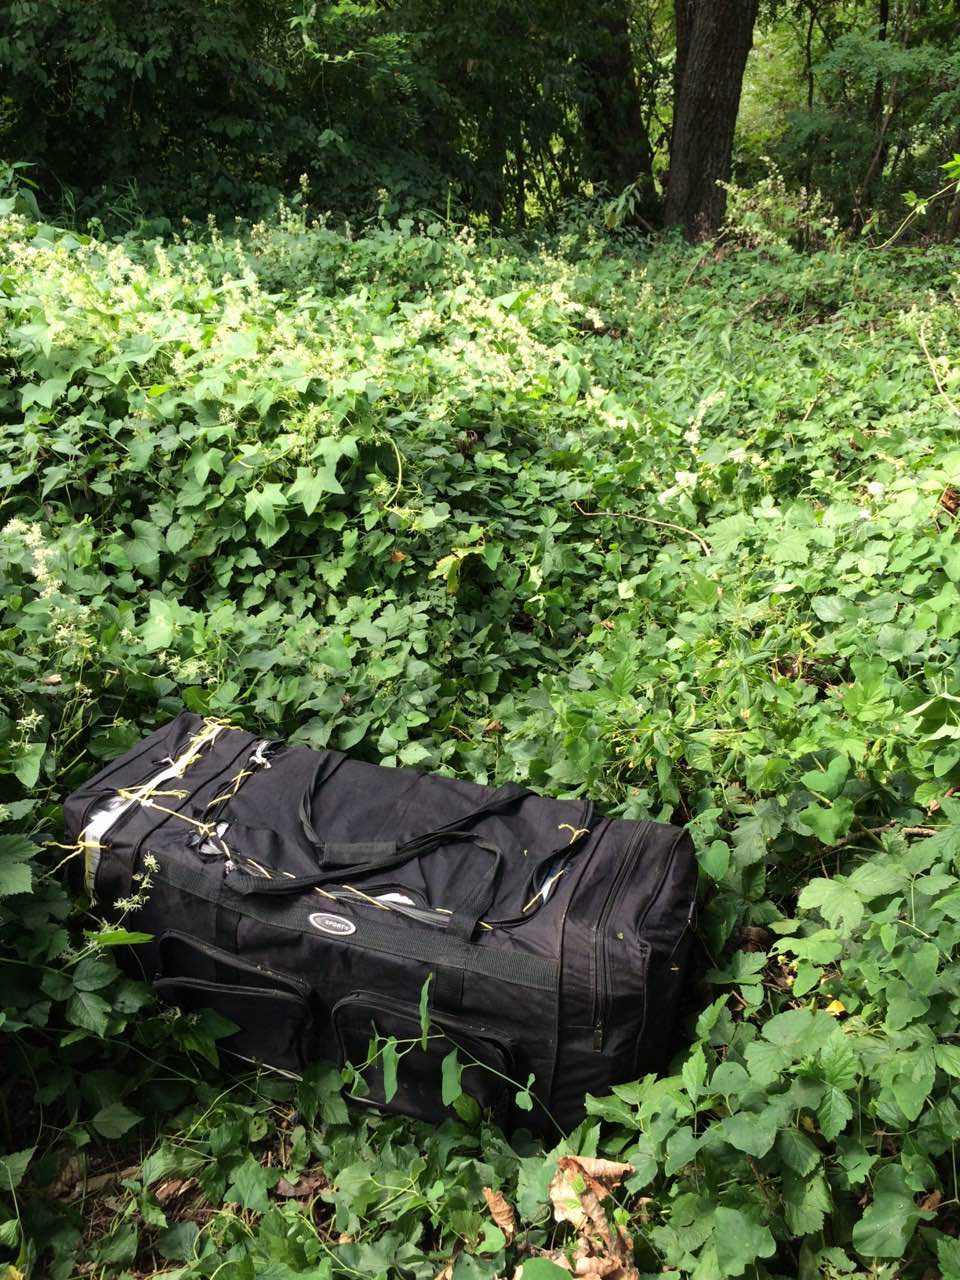 Прикордонники Мукачівського загону під час моніторингу державного кордону на ділянці відділу «Вилок», виявили сумку запаковану тютюновими виробами. Знахідку виявили за 100 м від держрубежу. 